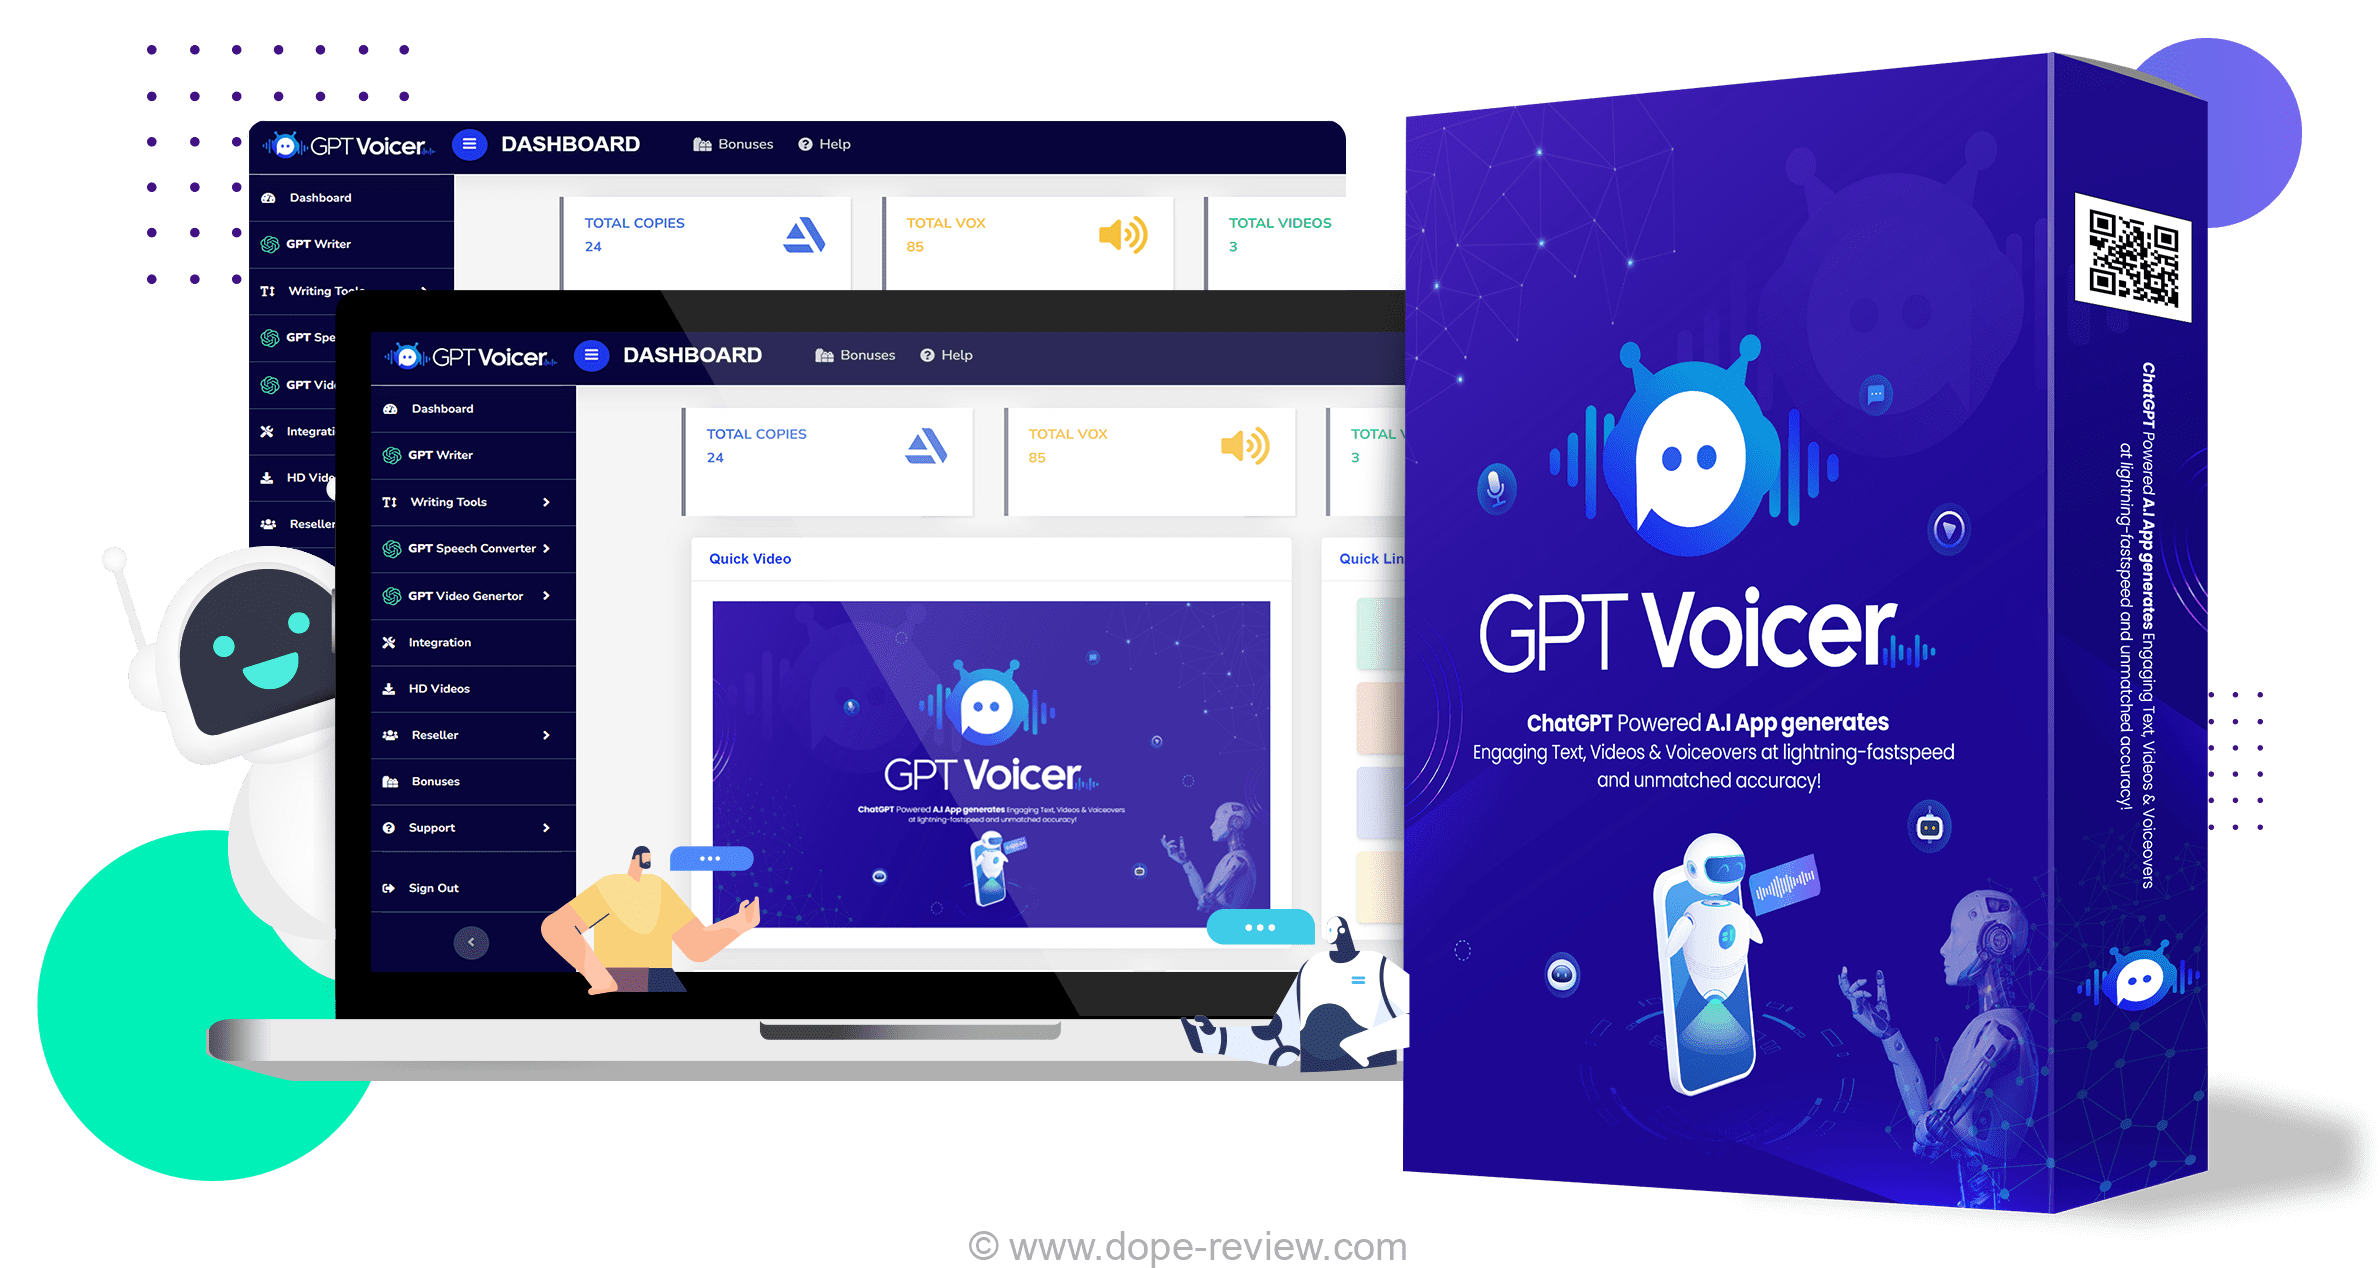 GPT Voicer